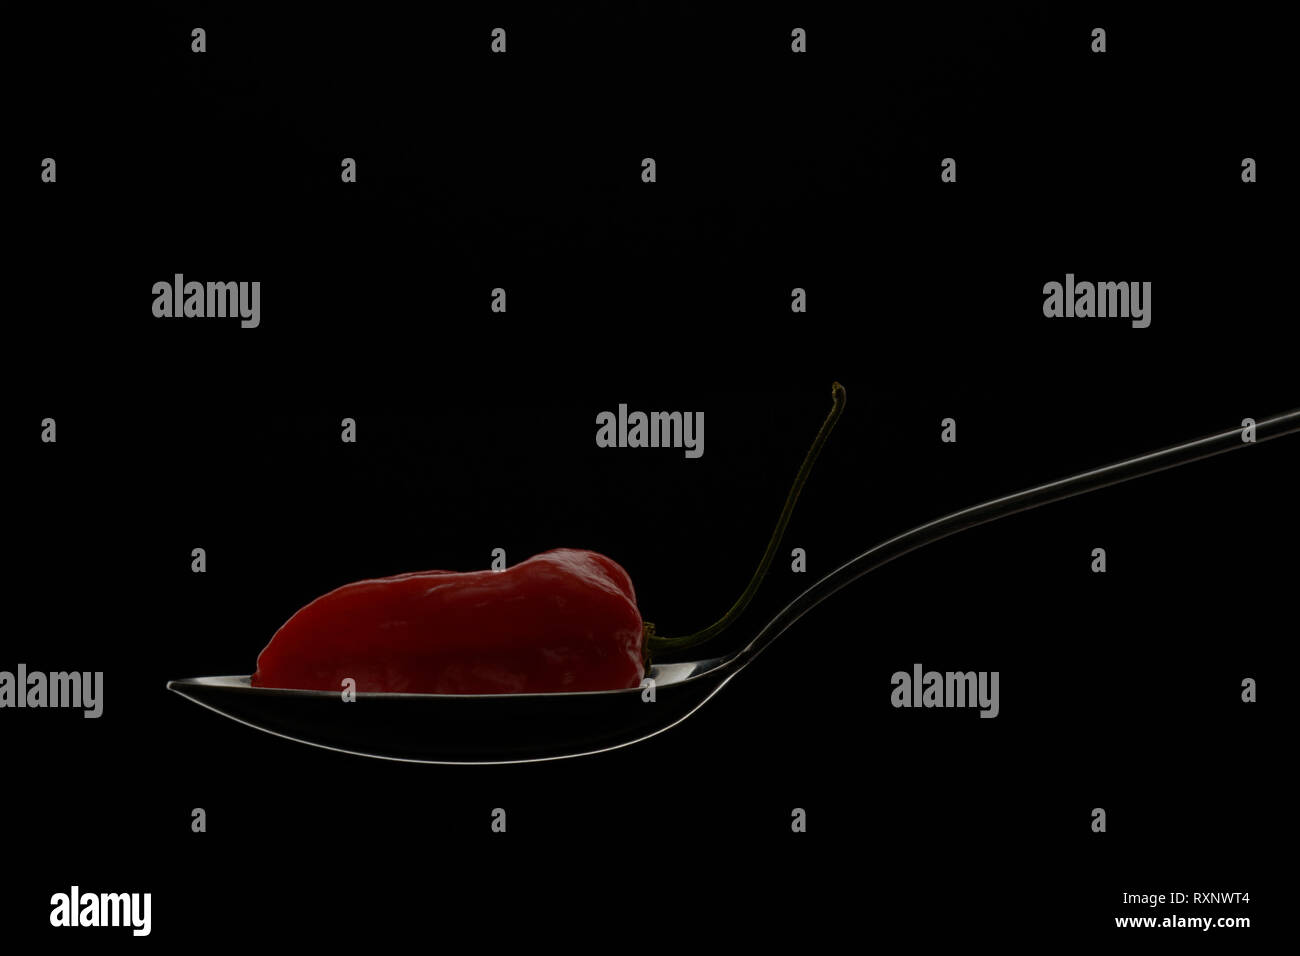 Komodo dragon Red Hot Pepper placé sur le contour de la cuillère lumineuse sur fond noir comme concept moderne de cuisine fusion alimentaire Banque D'Images